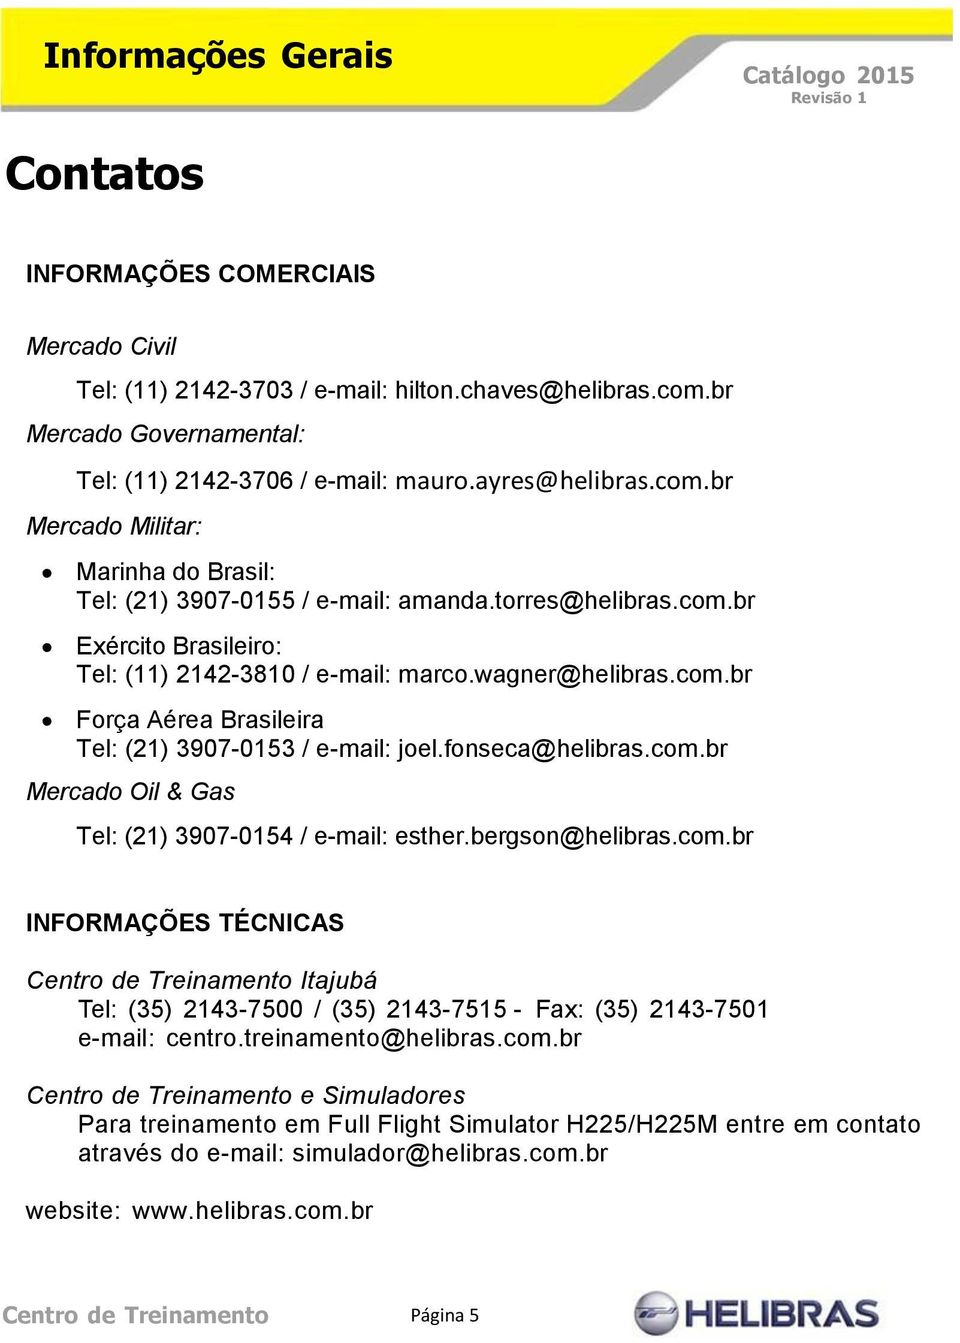 fonseca@helibras.com.br Mercado Oil & Gas Tel: (21) 3907-0154 / e-mail: esther.bergson@helibras.com.br INFORMAÇÕES TÉCNICAS Centro de Treinamento Itajubá Tel: (35) 2143-7500 / (35) 2143-7515 - Fax: (35) 2143-7501 e-mail: centro.